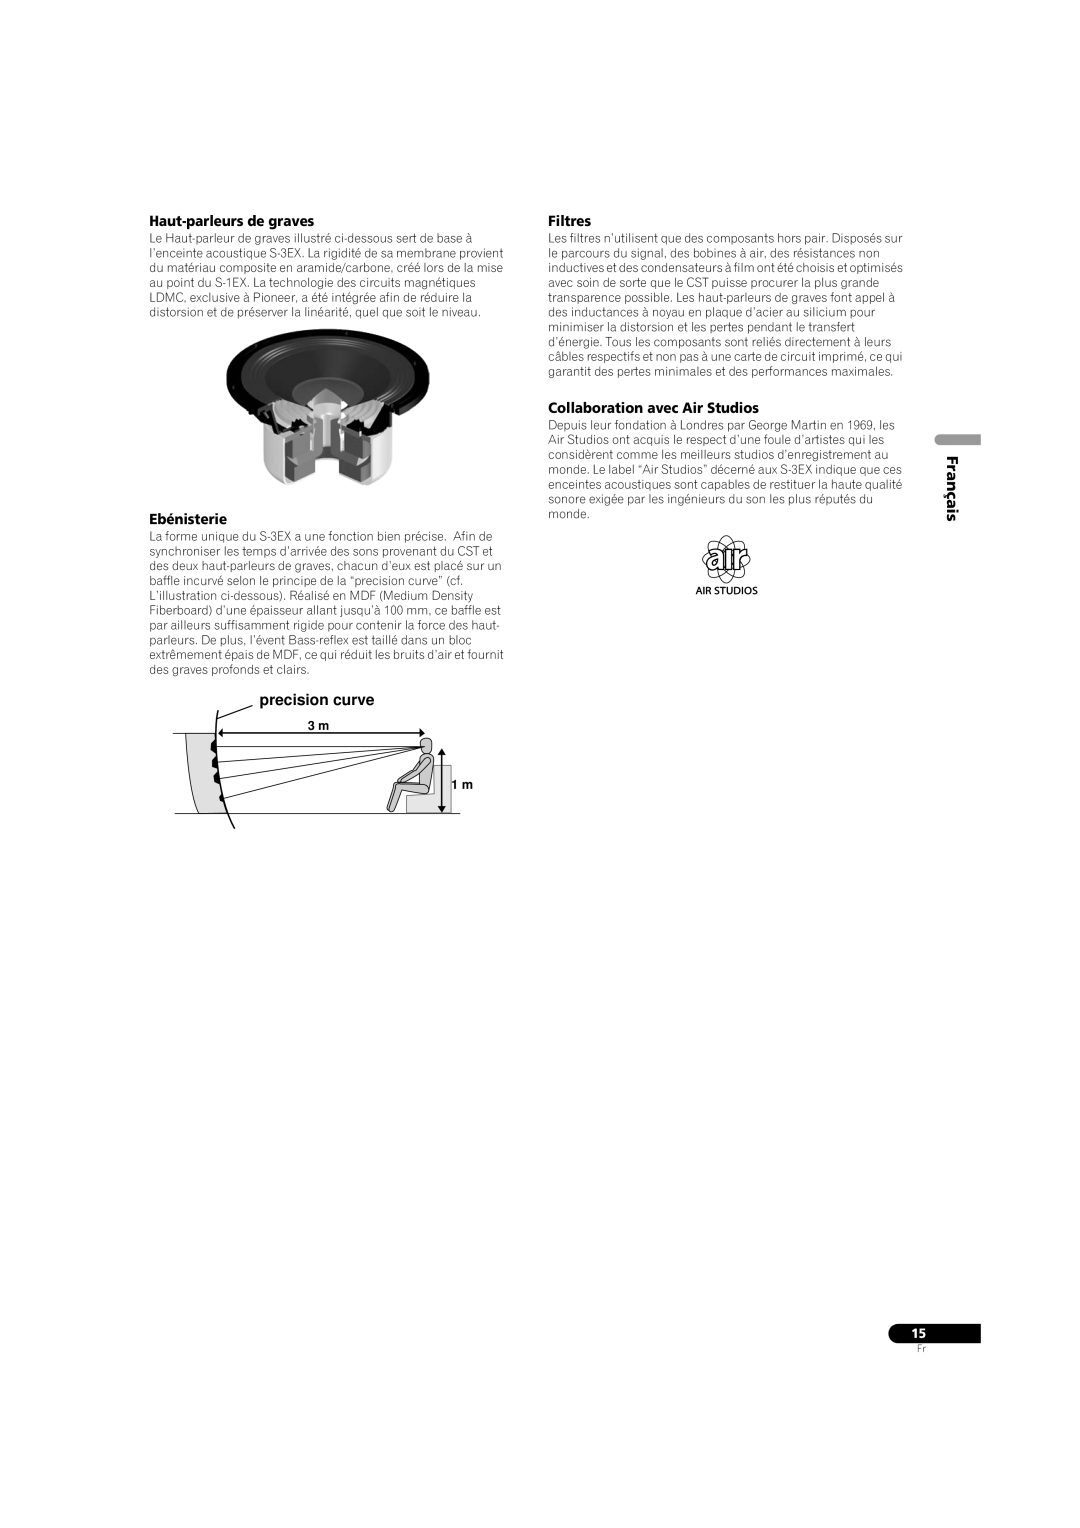 Pioneer S-3EX Haut-parleursde graves, Ebénisterie, Filtres, Collaboration avec Air Studios, precision curve, Français 